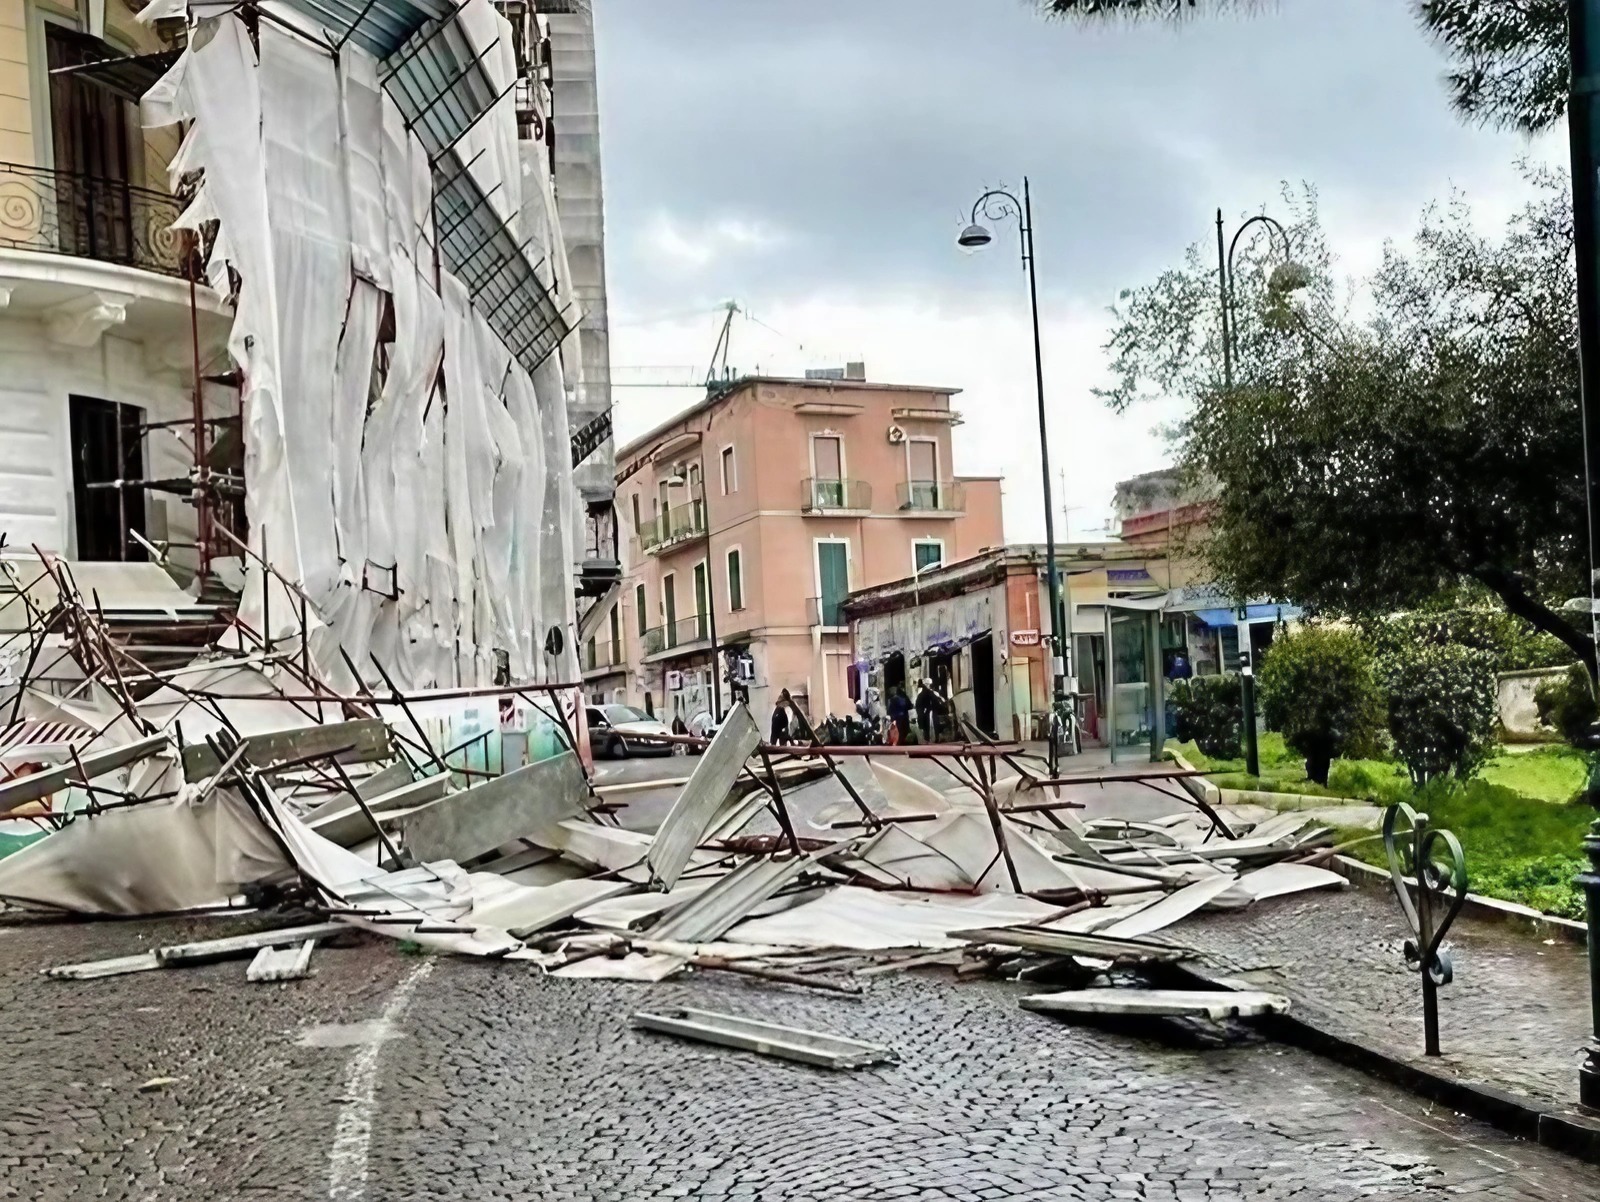 Vomero, via Aniello Falcone, the fallen scaffolding